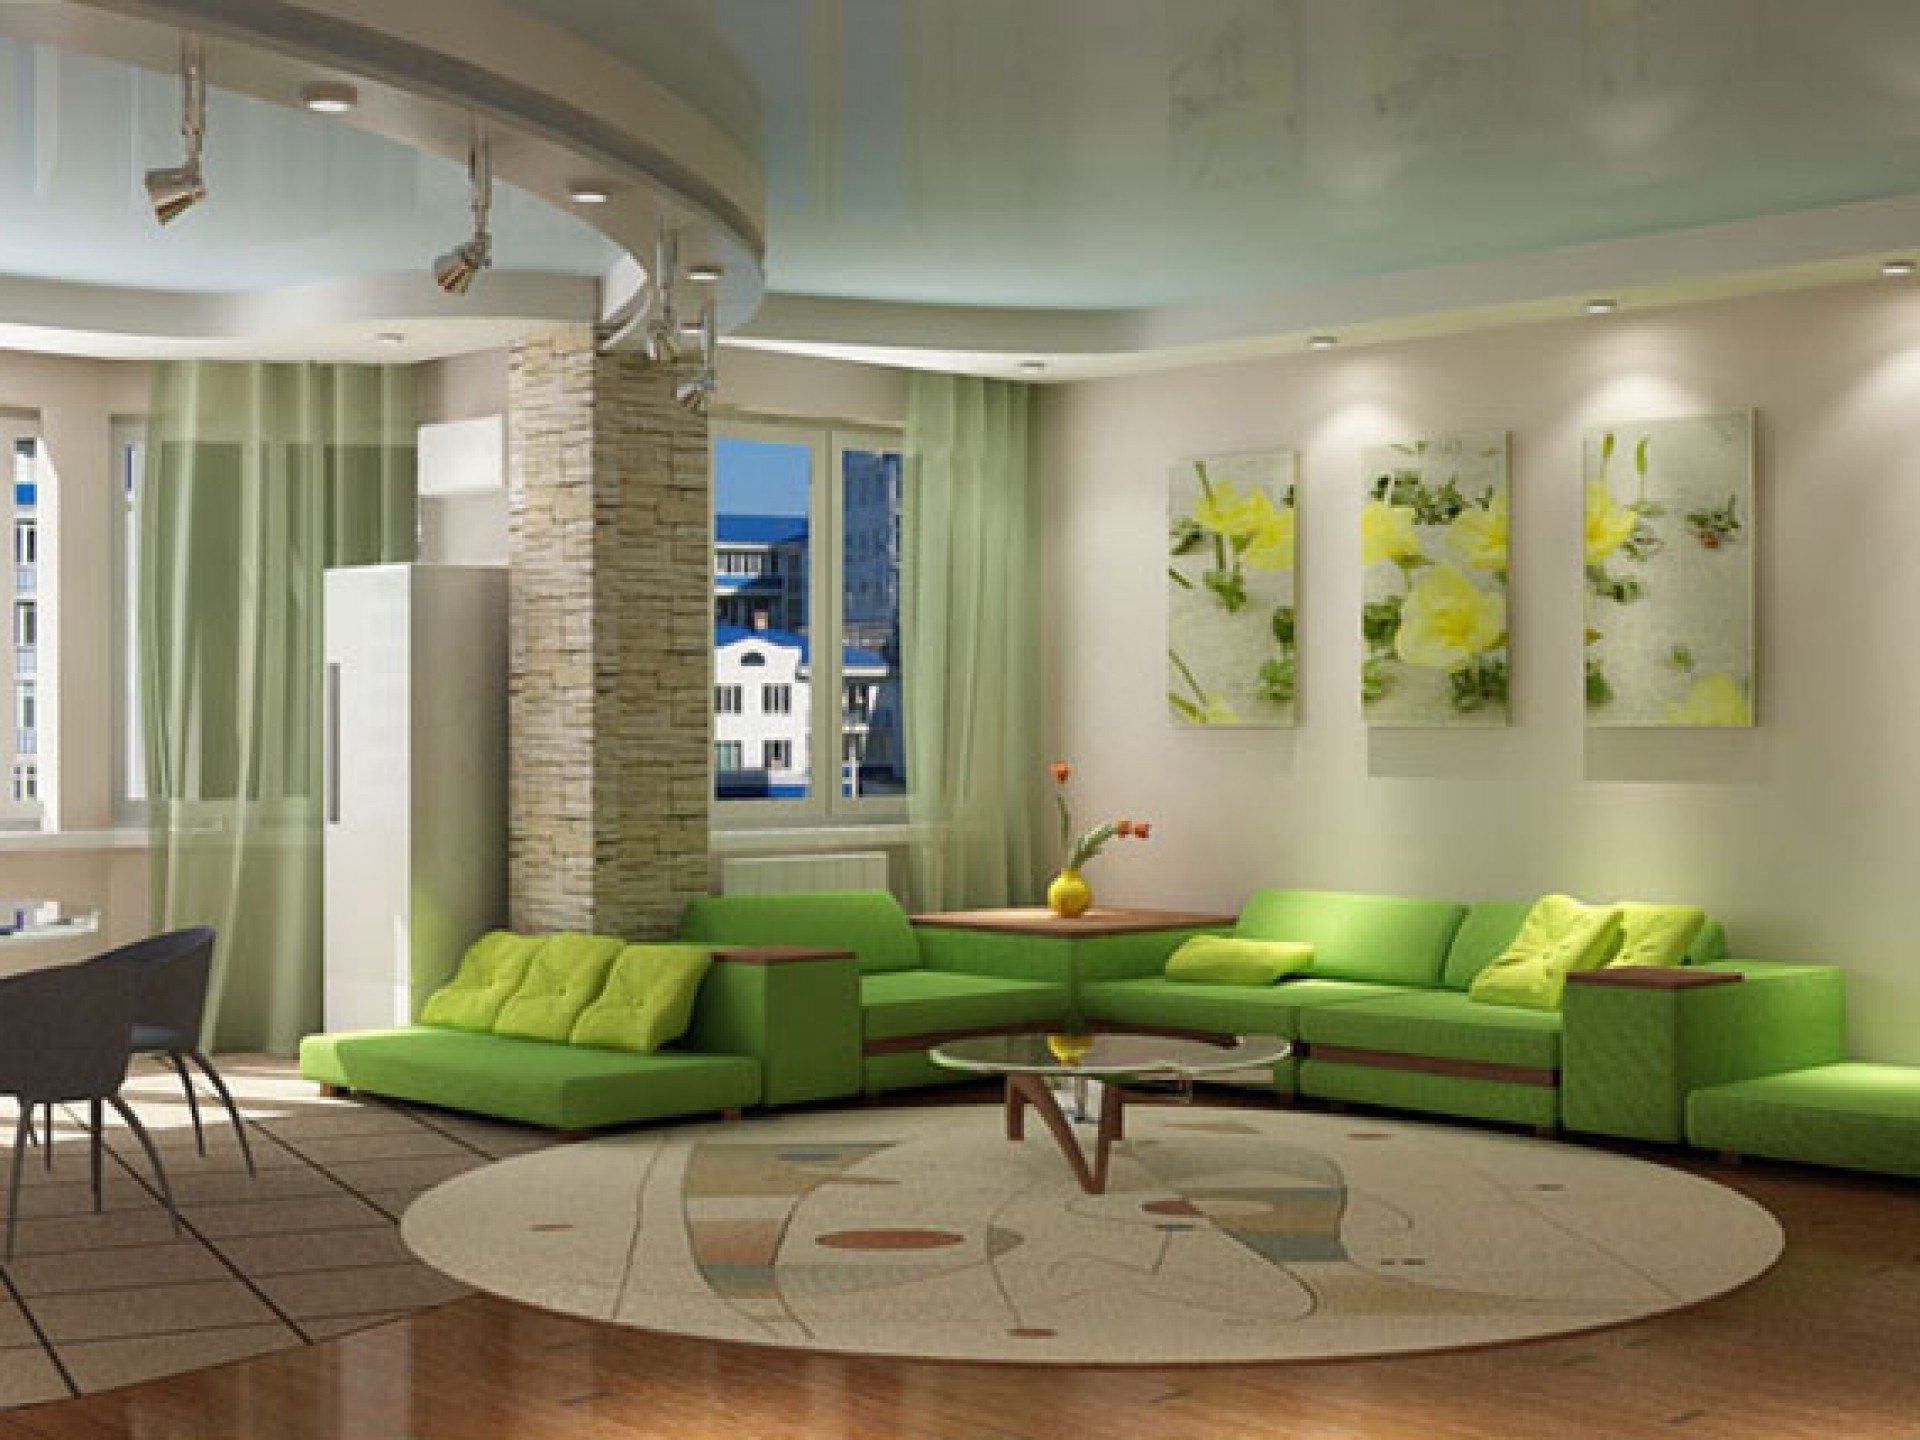 Как нужно оформить квартиру. Интерьер гостиной. Гостиная в зеленых тонах. Гостиная в салатовых тонах. Гостиная в зеленом стиле.